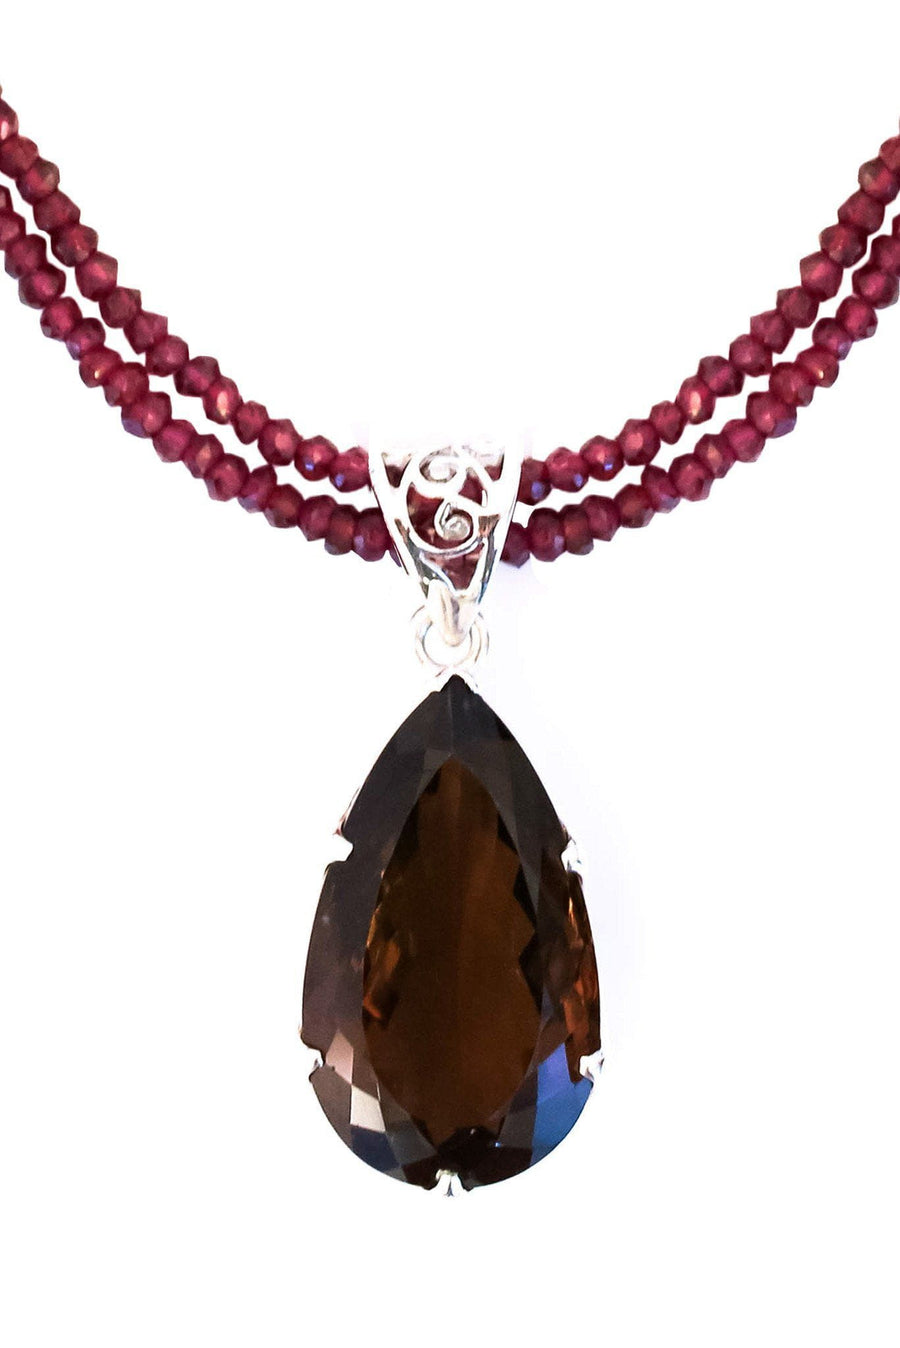 Buy Smoky Topaz Pendant Necklace Online - Precious Gemstone Jewelry NY -  INAYA